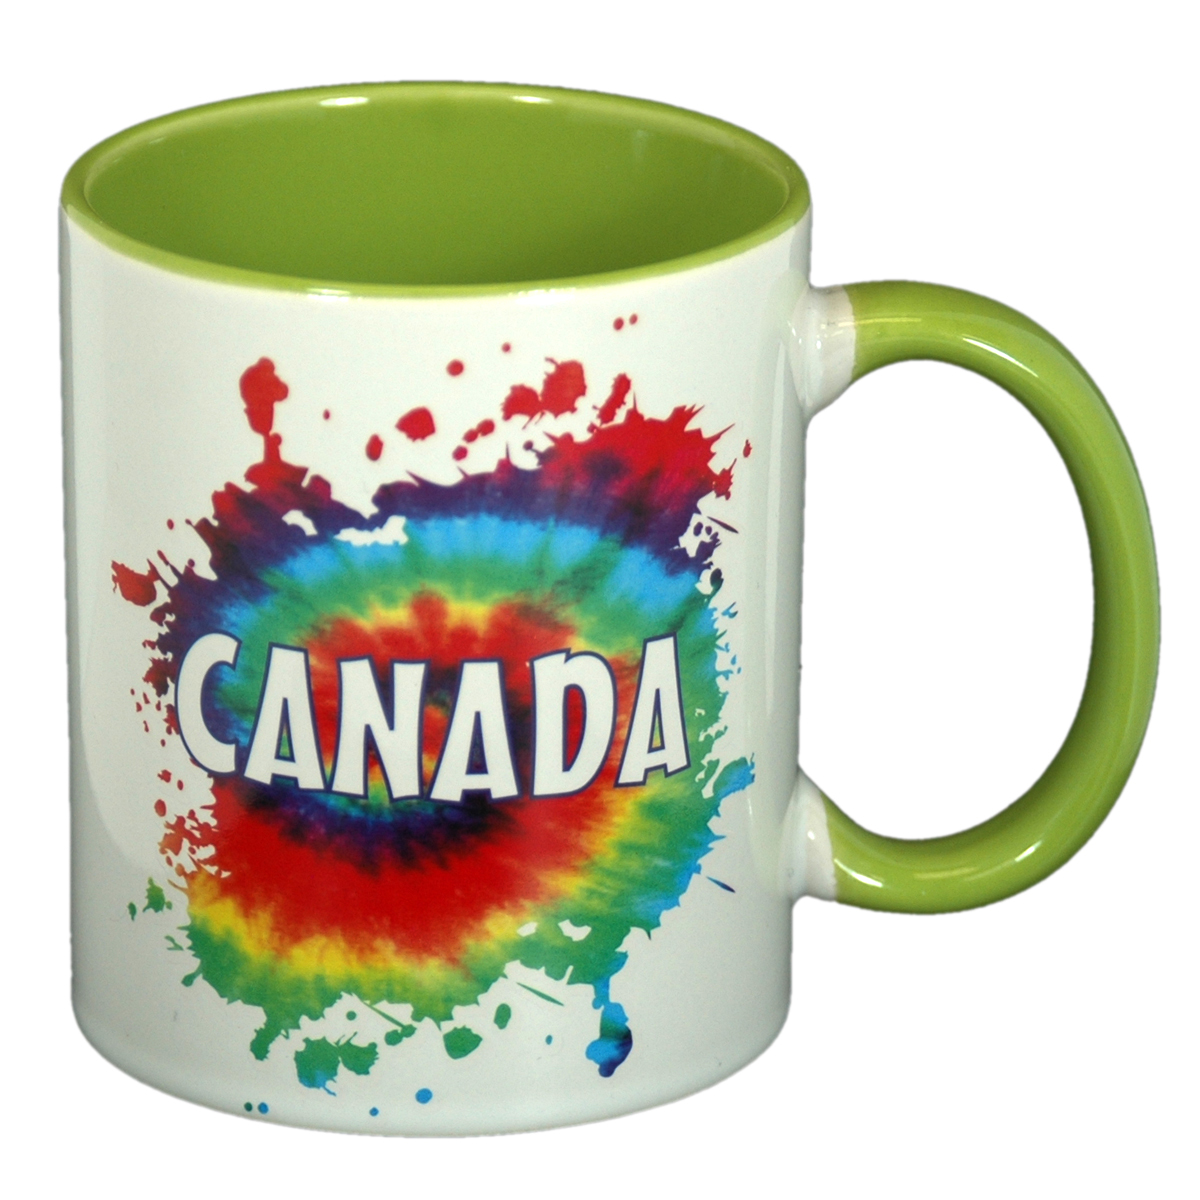 Canada Mug 89989JE Bright Colored Tie Dye Coffee Mug Tie-Dye Gifts Souvenir Hot Beverage Cup Unique 11-ounce Capacity